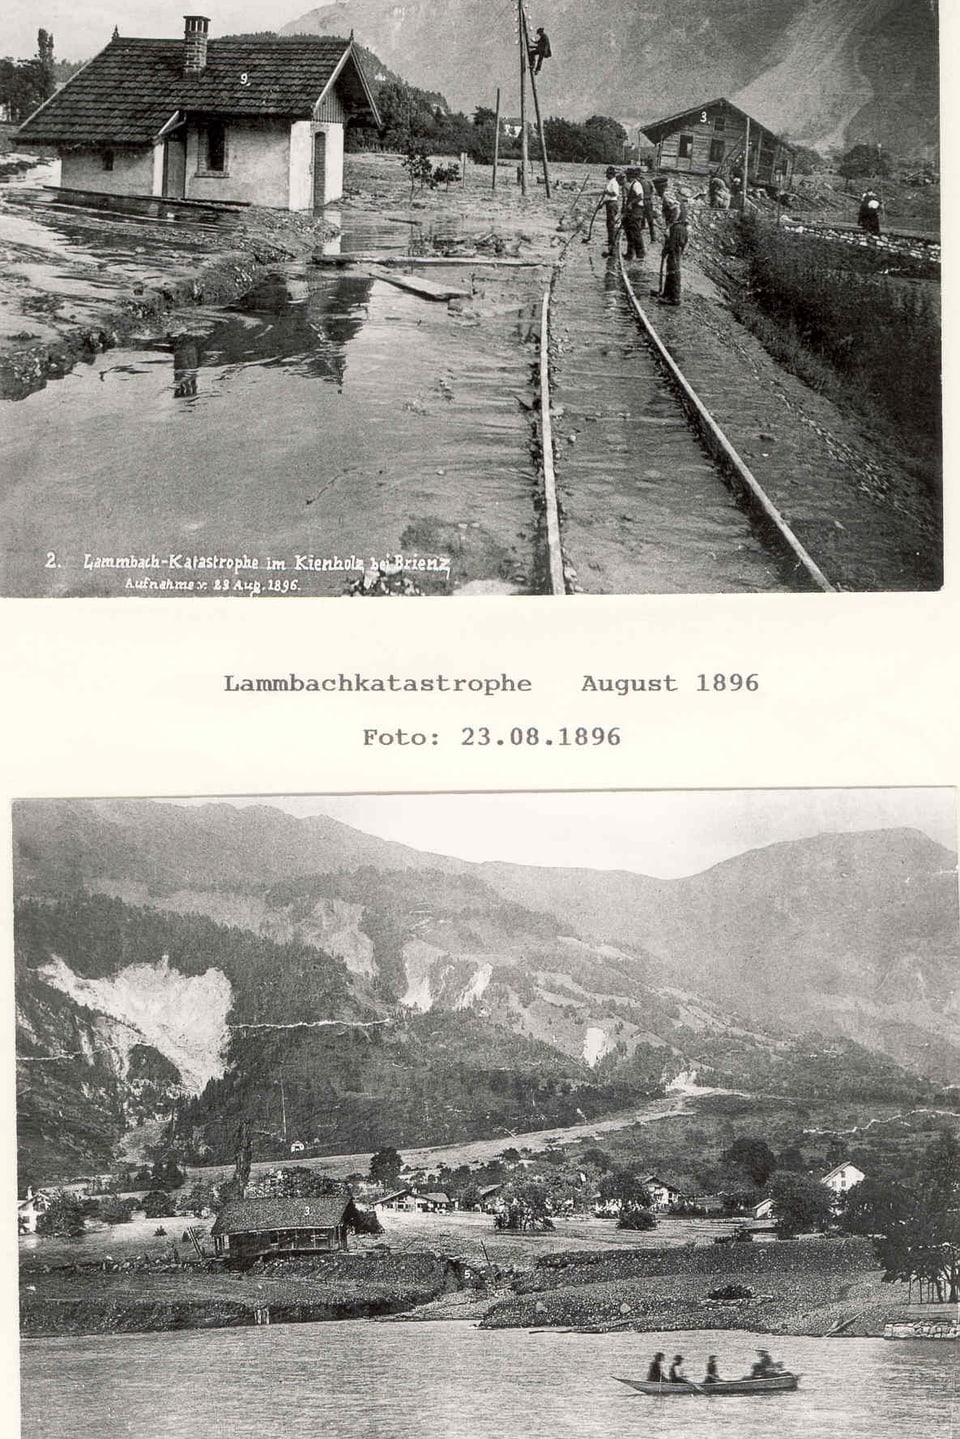 Fotographien von der Lammbach-Katastrophe in Kienholz im August 1896.